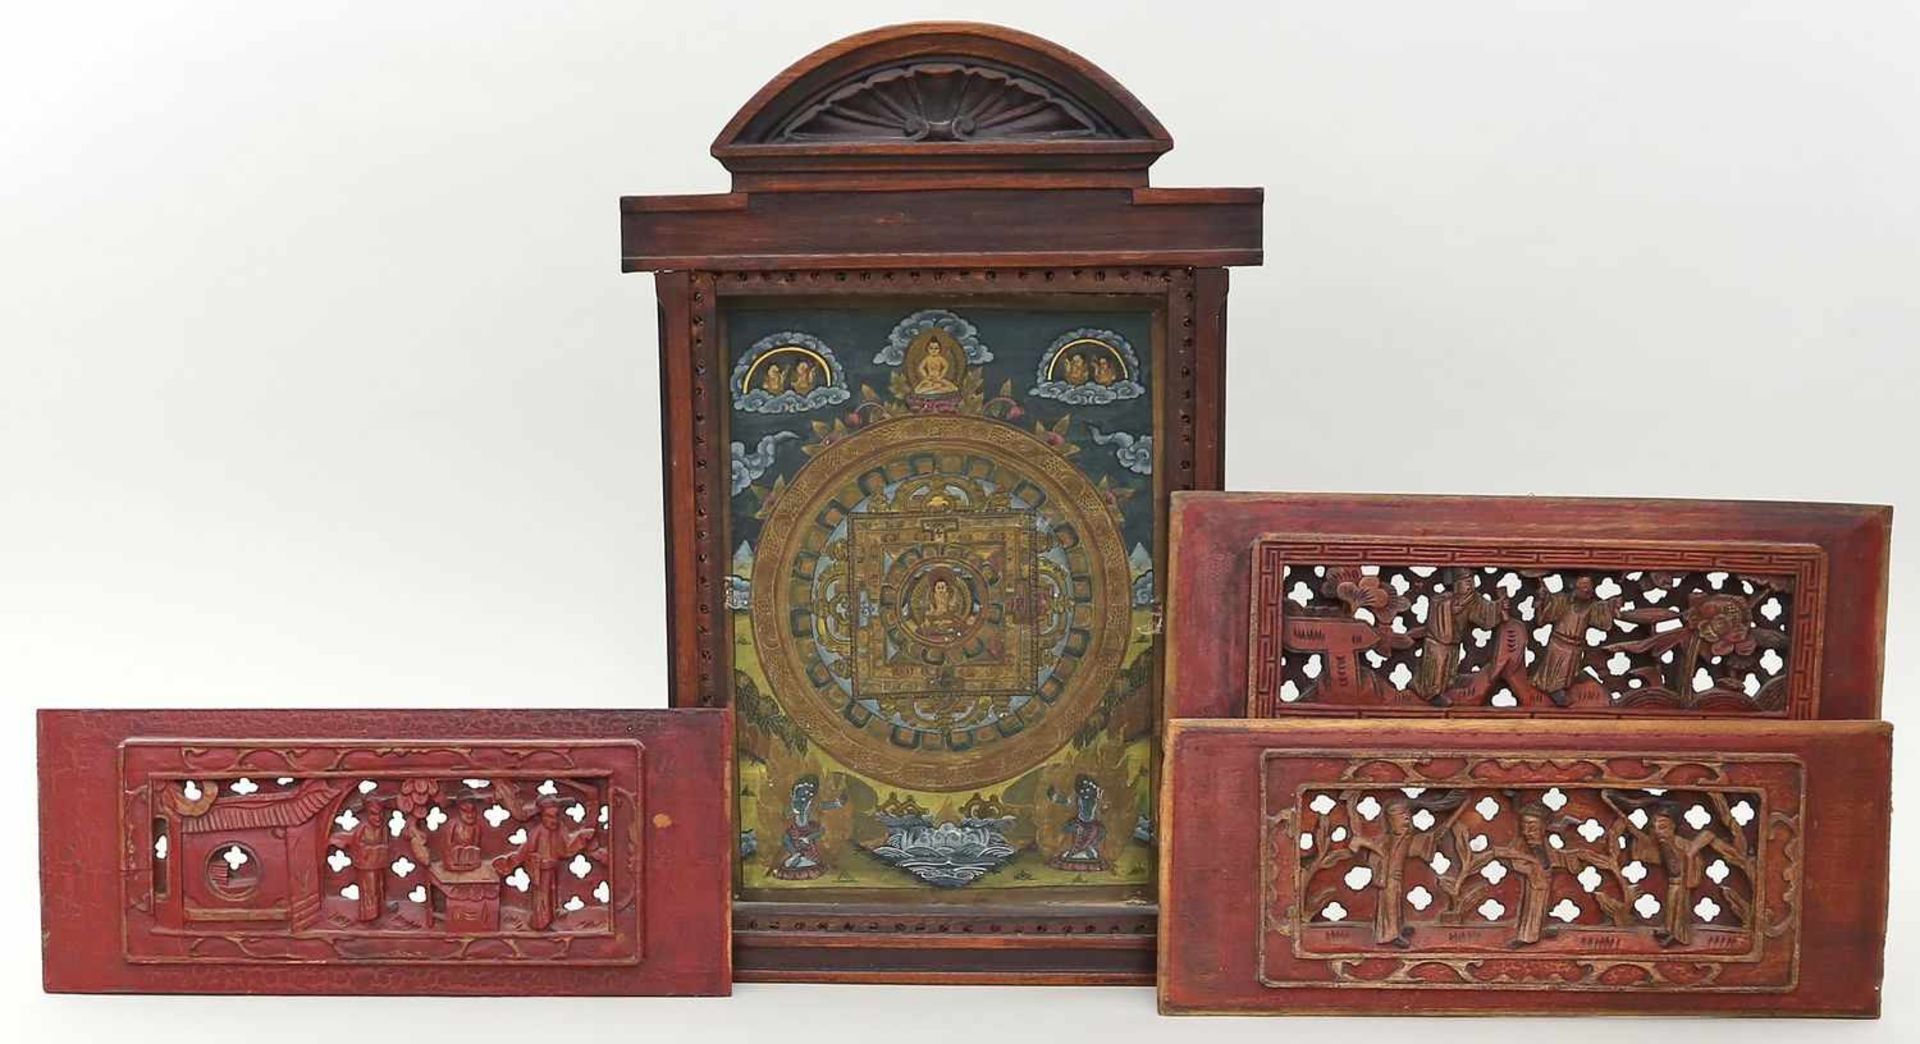 3 Schnitzereien und ein Thangka.Holz, teils durchbrochen geschnitzt und rot gefasst mit div. Motiven